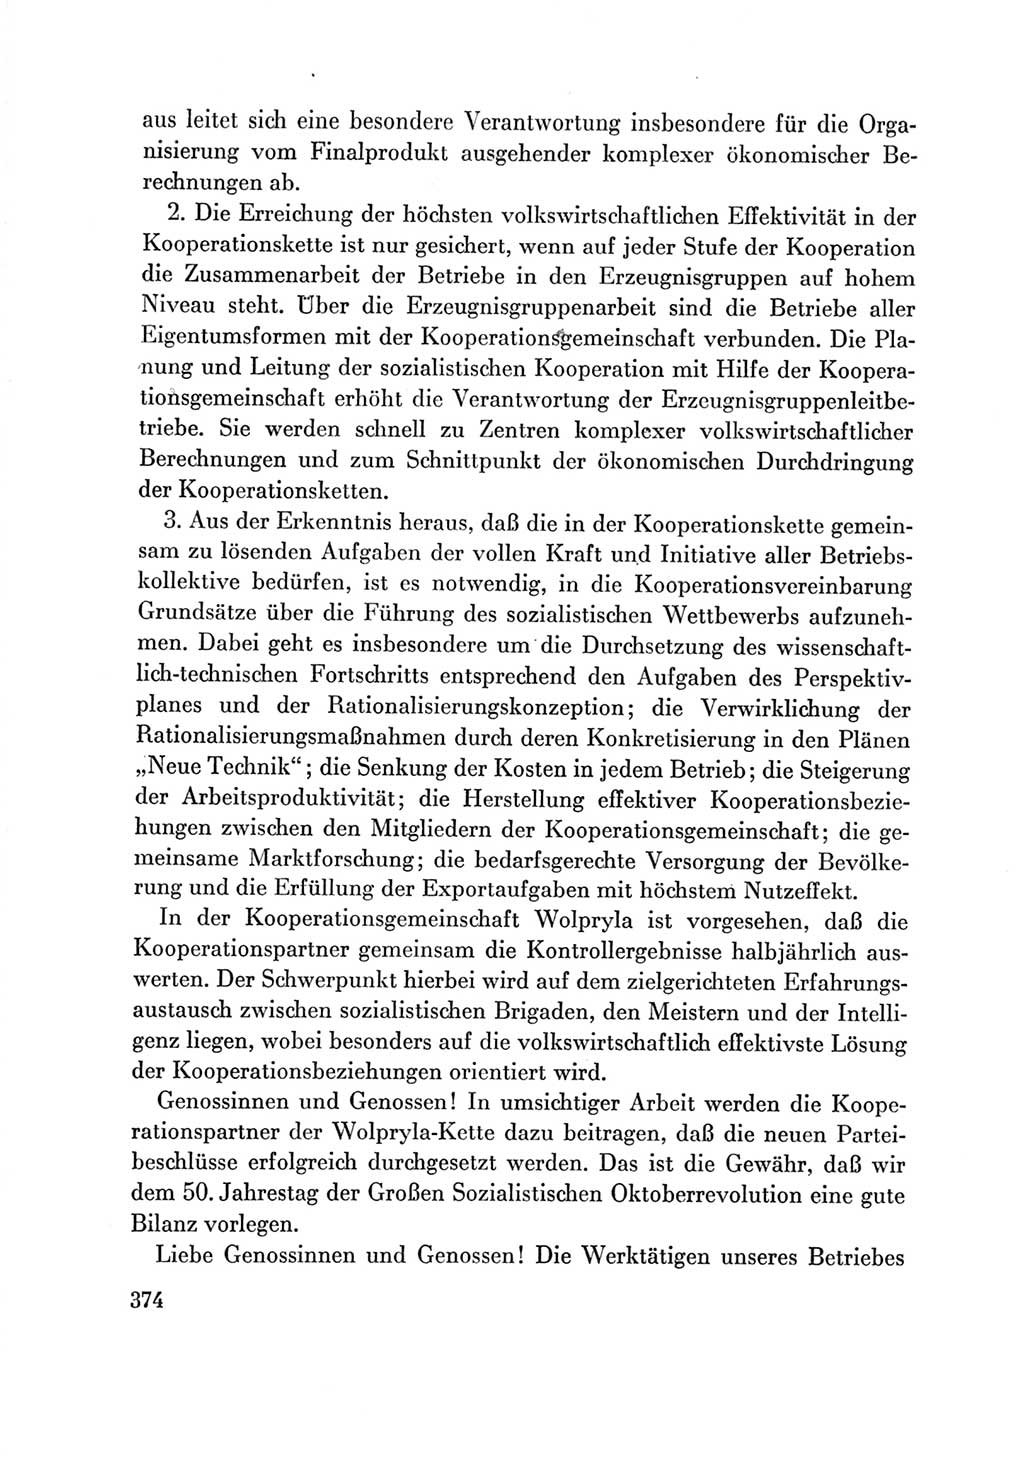 Protokoll der Verhandlungen des Ⅶ. Parteitages der Sozialistischen Einheitspartei Deutschlands (SED) [Deutsche Demokratische Republik (DDR)] 1967, Band Ⅲ, Seite 374 (Prot. Verh. Ⅶ. PT SED DDR 1967, Bd. Ⅲ, S. 374)